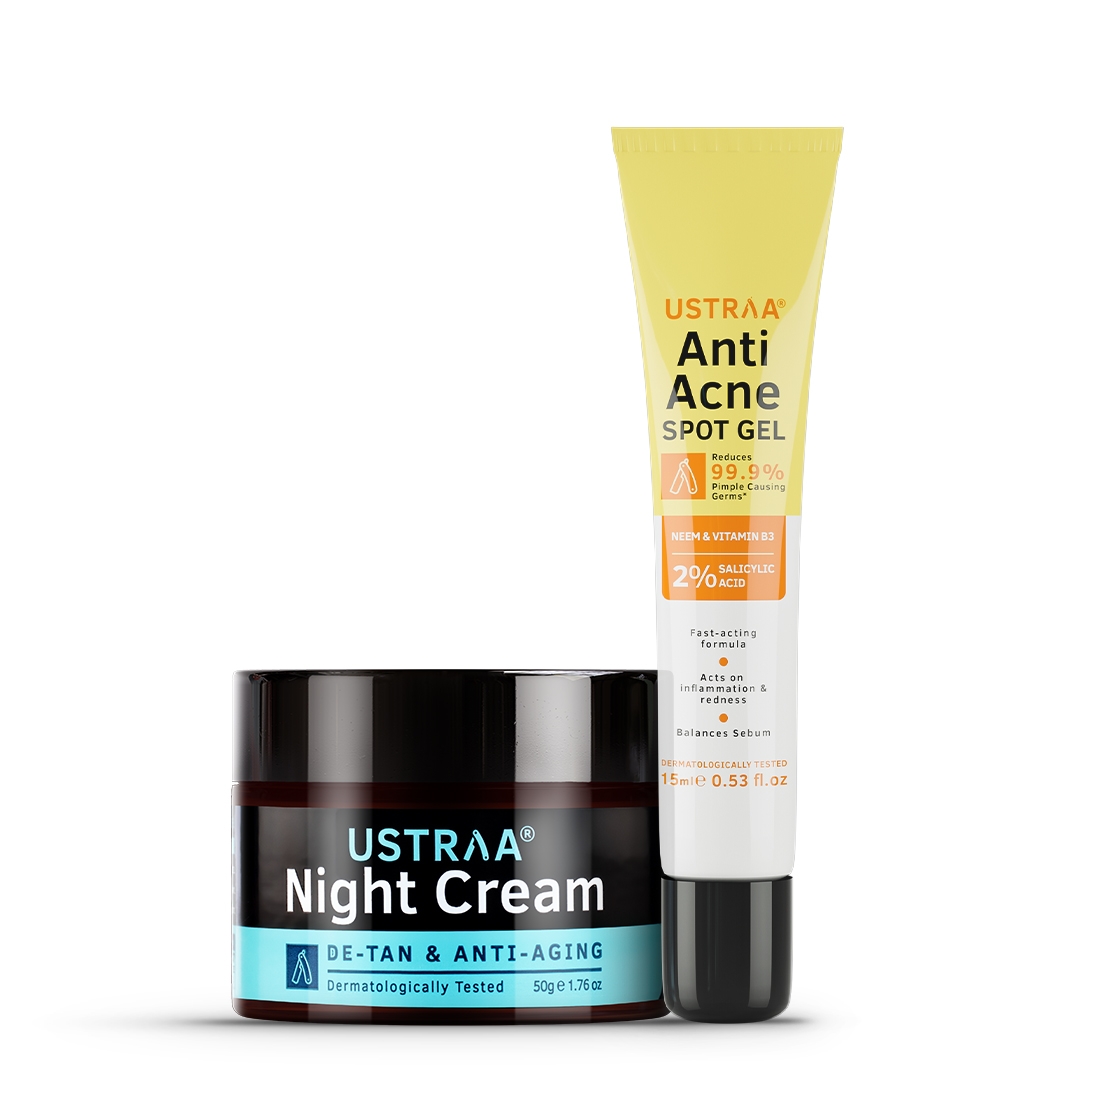 Ustraa Anti Acne Spot Gel - 15ml & Night Cream - De-tan and Anti-aging - 50g